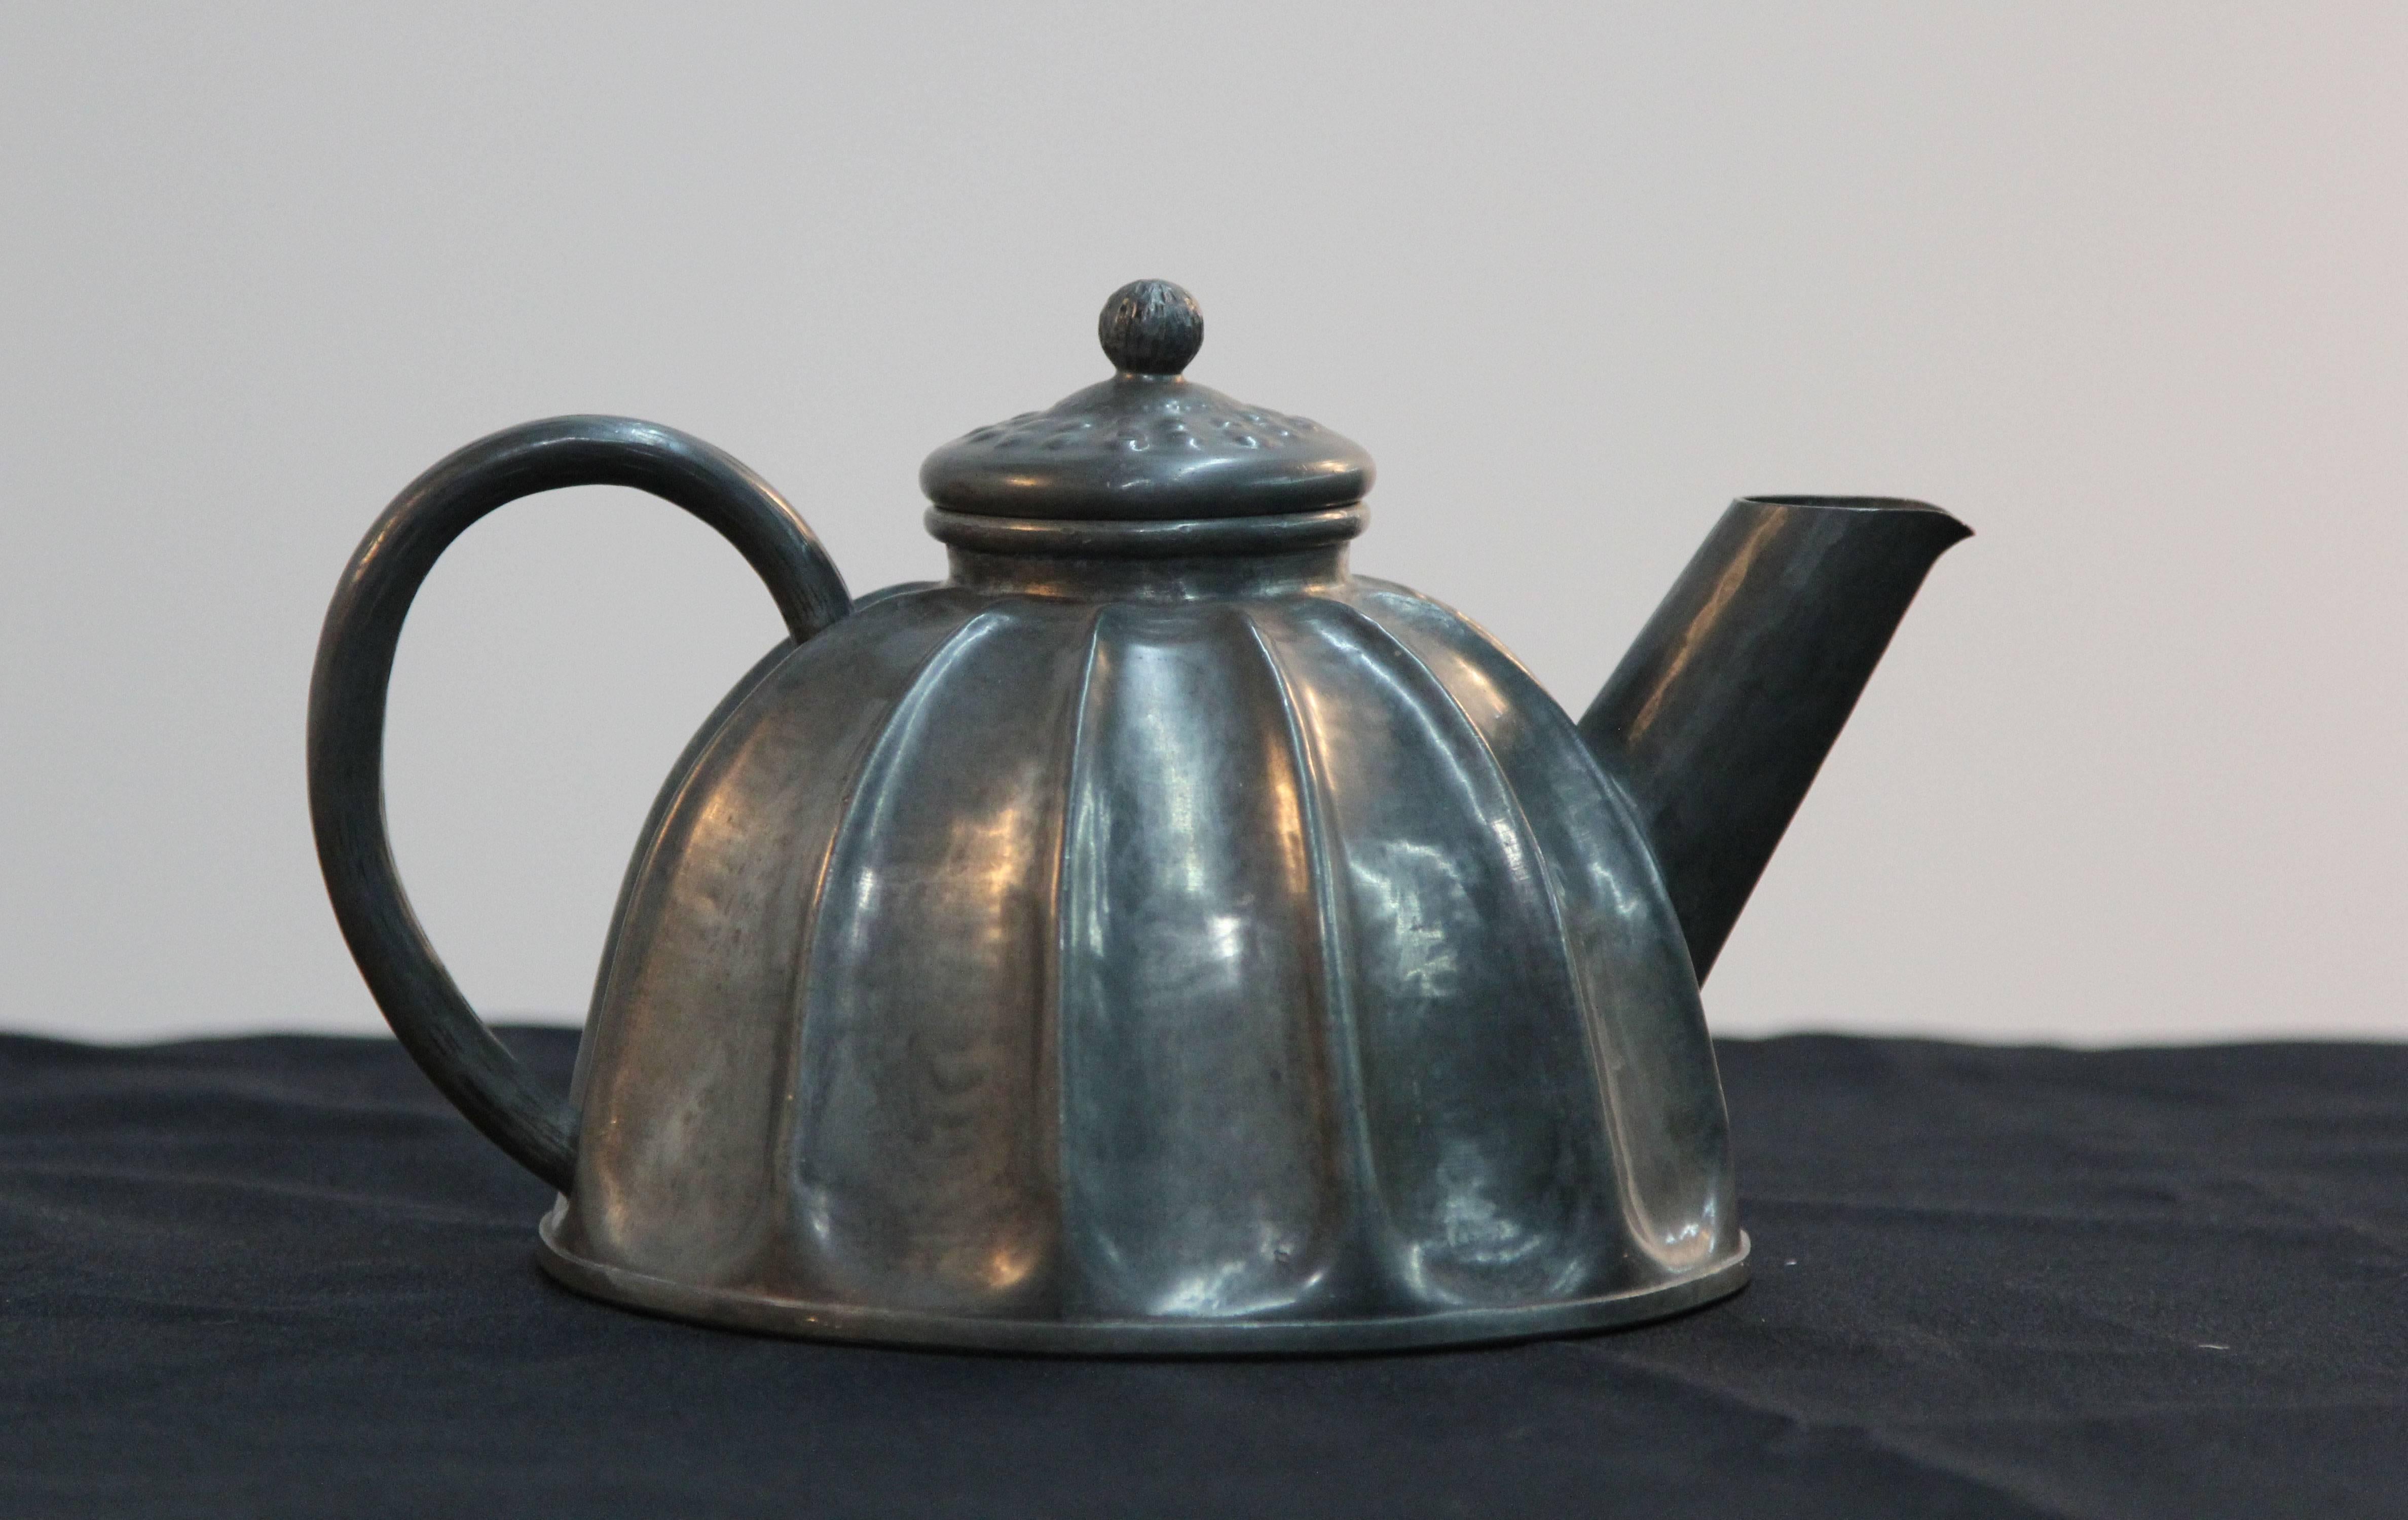 Hand-hammered pewter tea pot. Alice + Eugene Chanal.